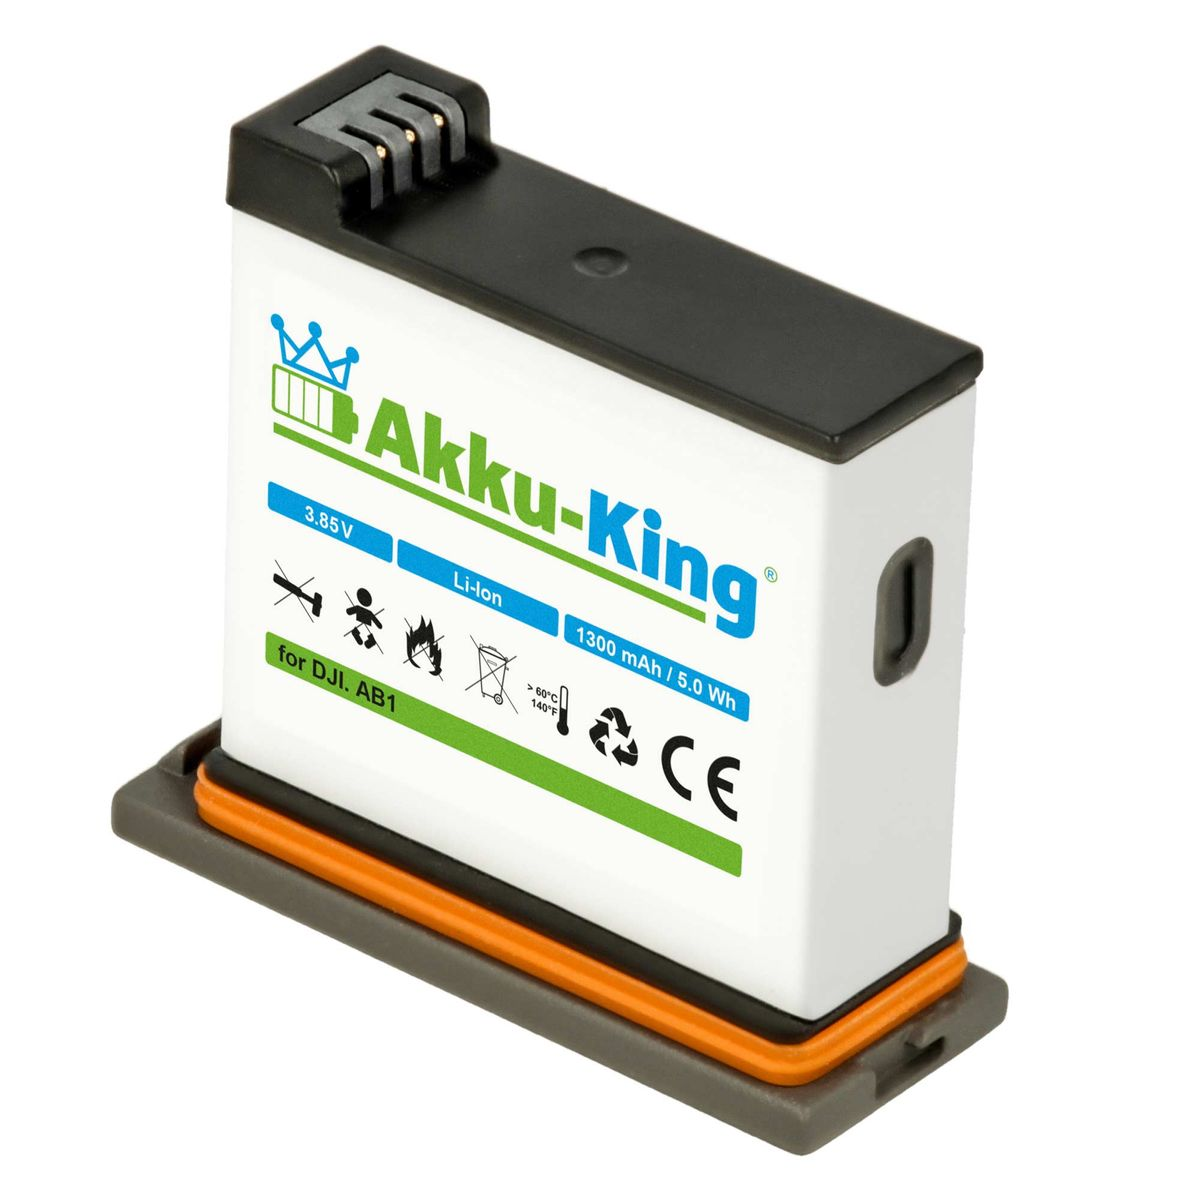 kompatibel Akku 1300mAh mit 3.85 Volt, Kamera-Akku, AKKU-KING DJI AB1 P01 Li-Ion